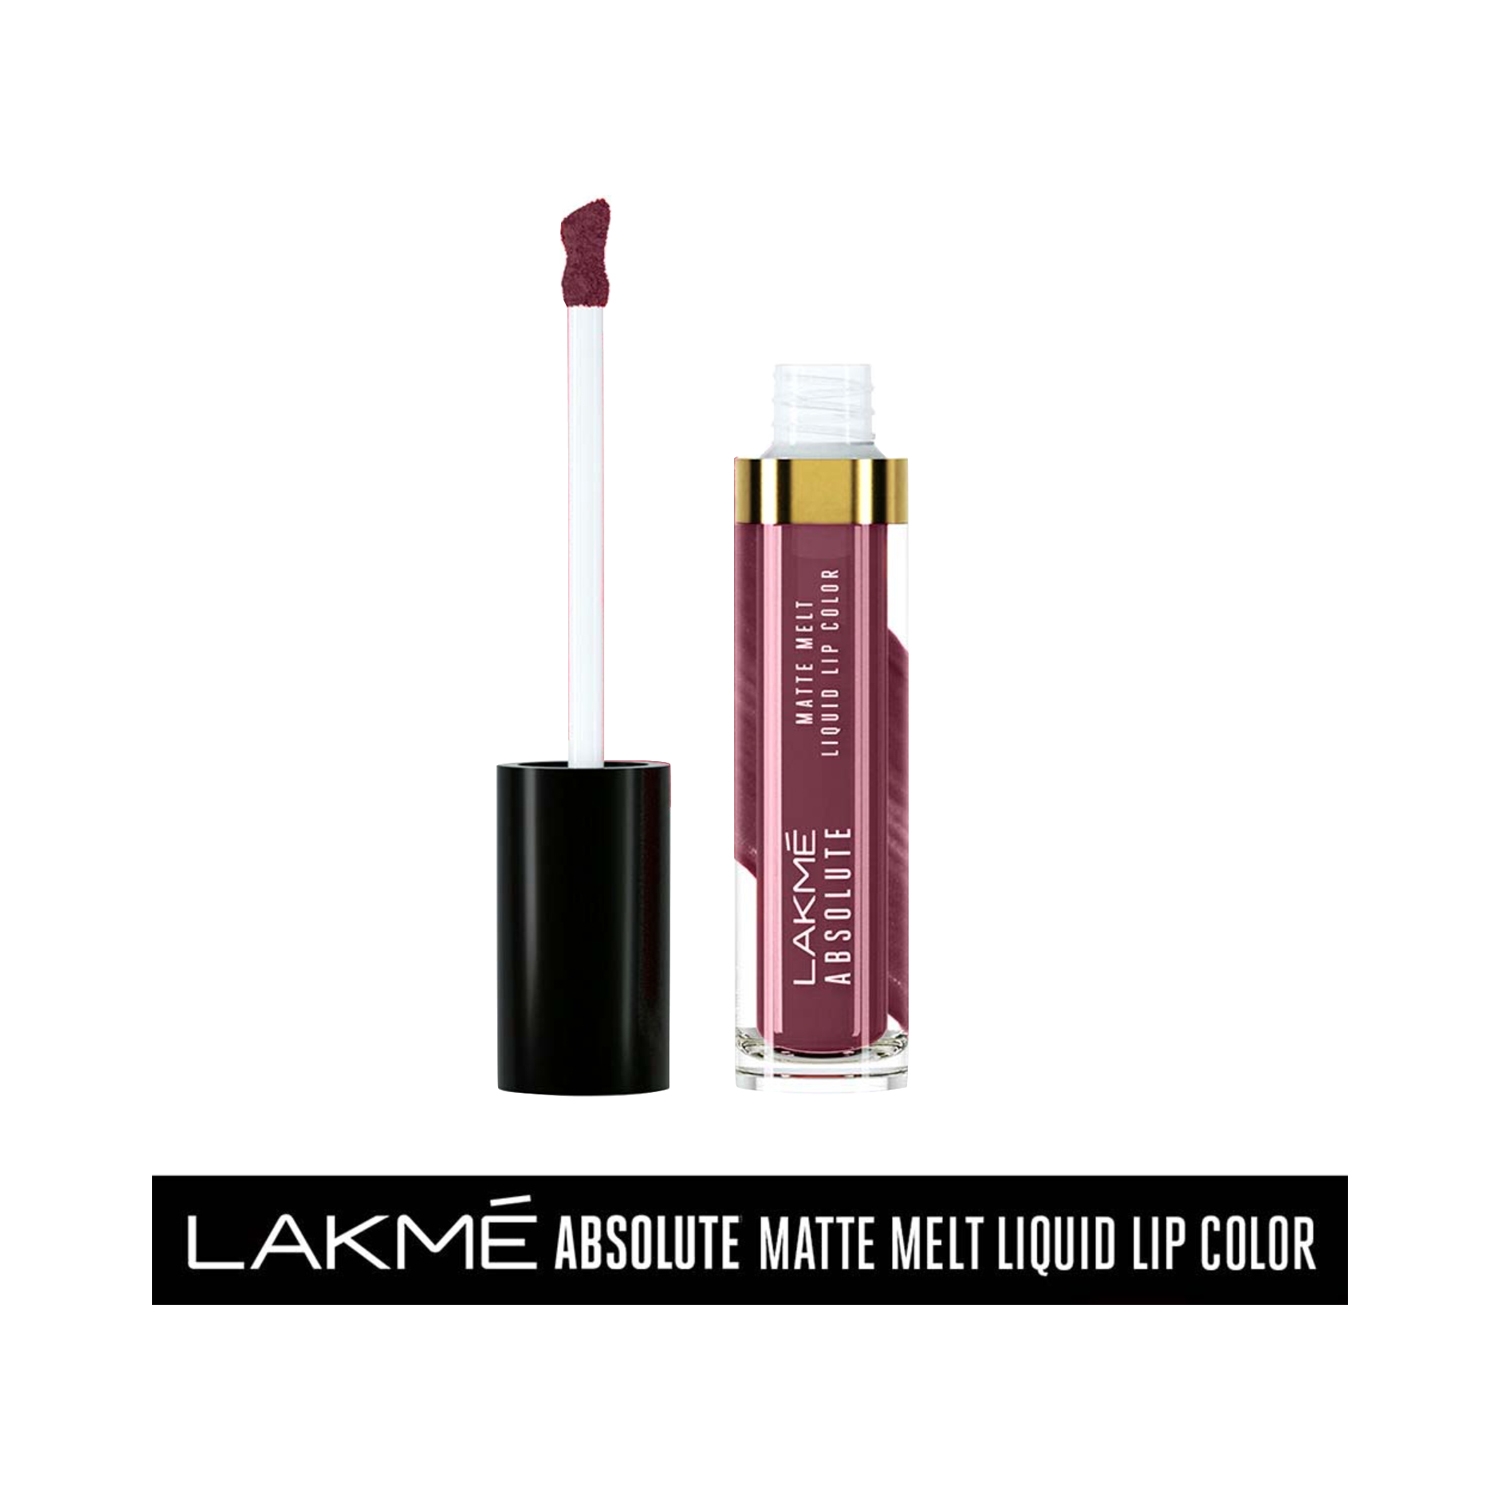 Lakme | Lakme Absolute Matte Melt Liquid Lip Color - Mulberry Feast (6ml)